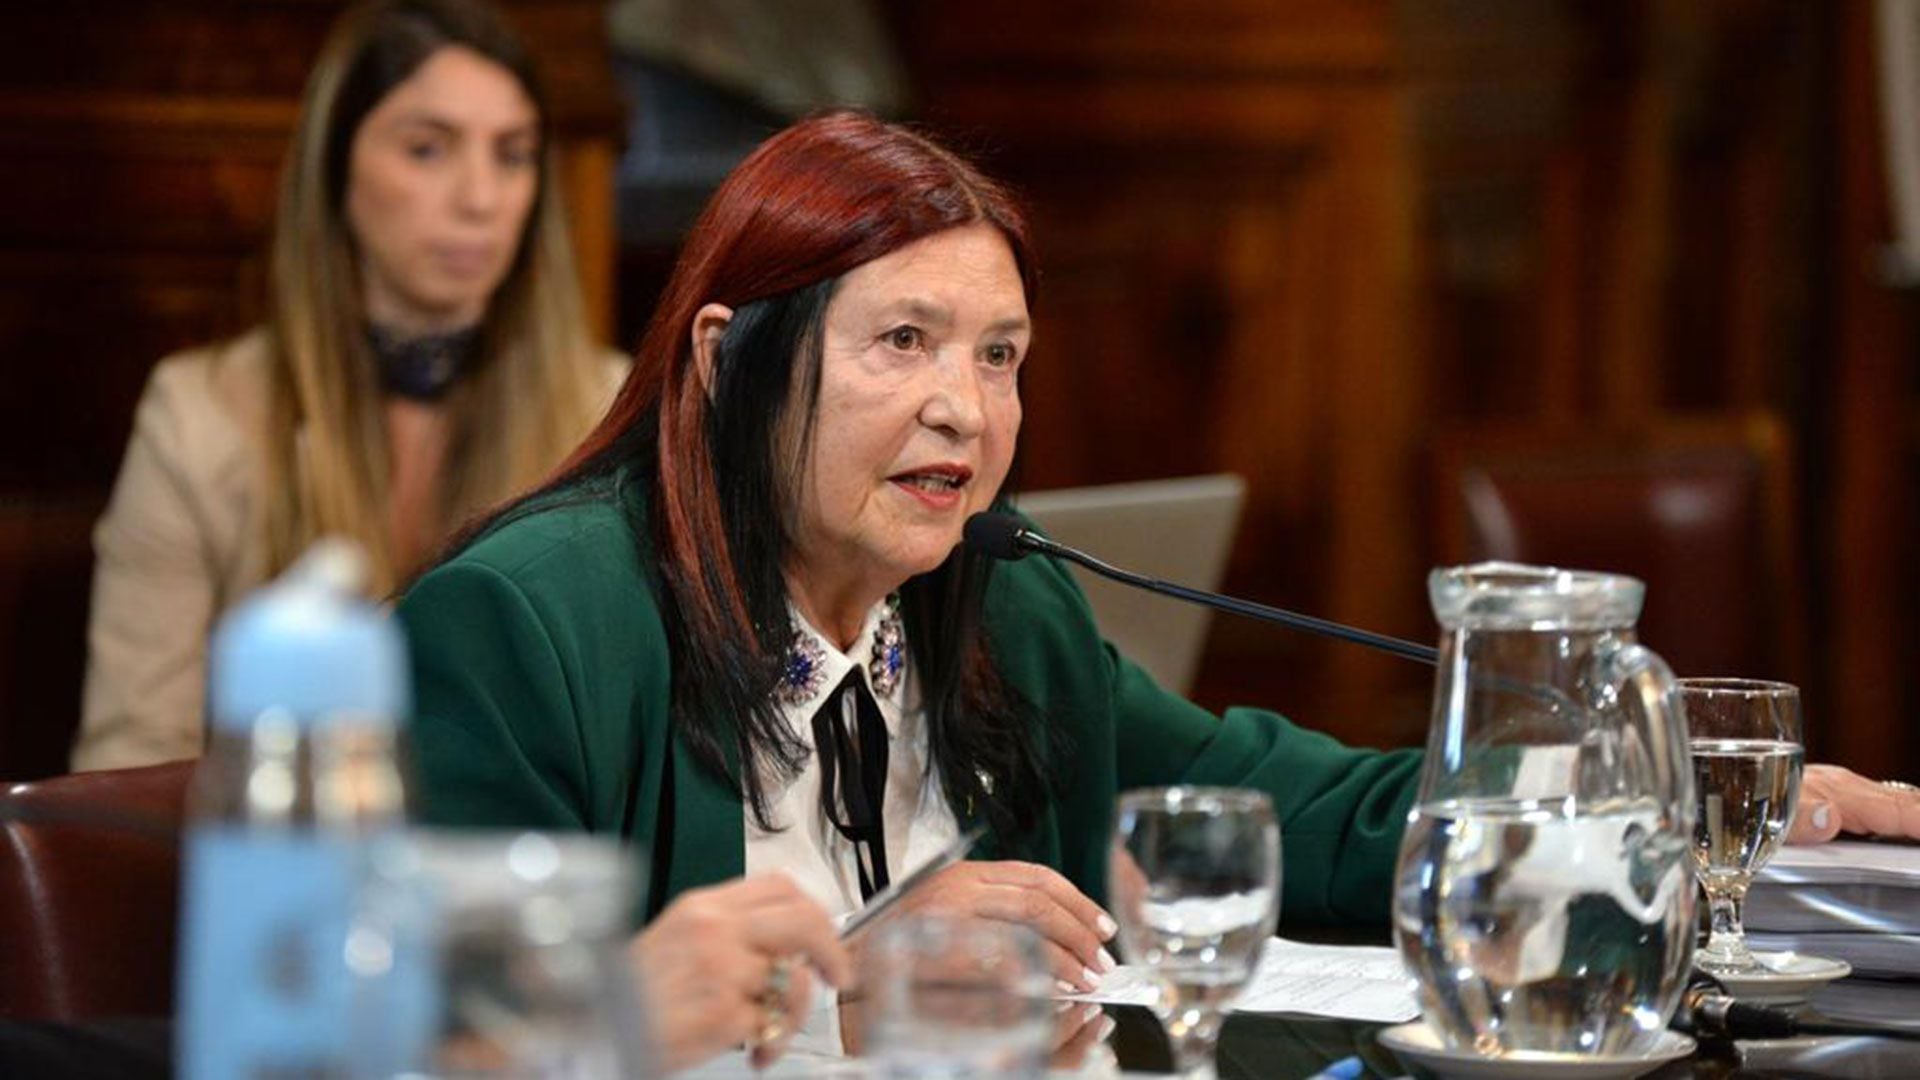 La jueza Ana María Figueroa, quien el 9 de agosto cumplió los 75 años, la edad límite que marca la Constitución para que pueda seguir como magistrada